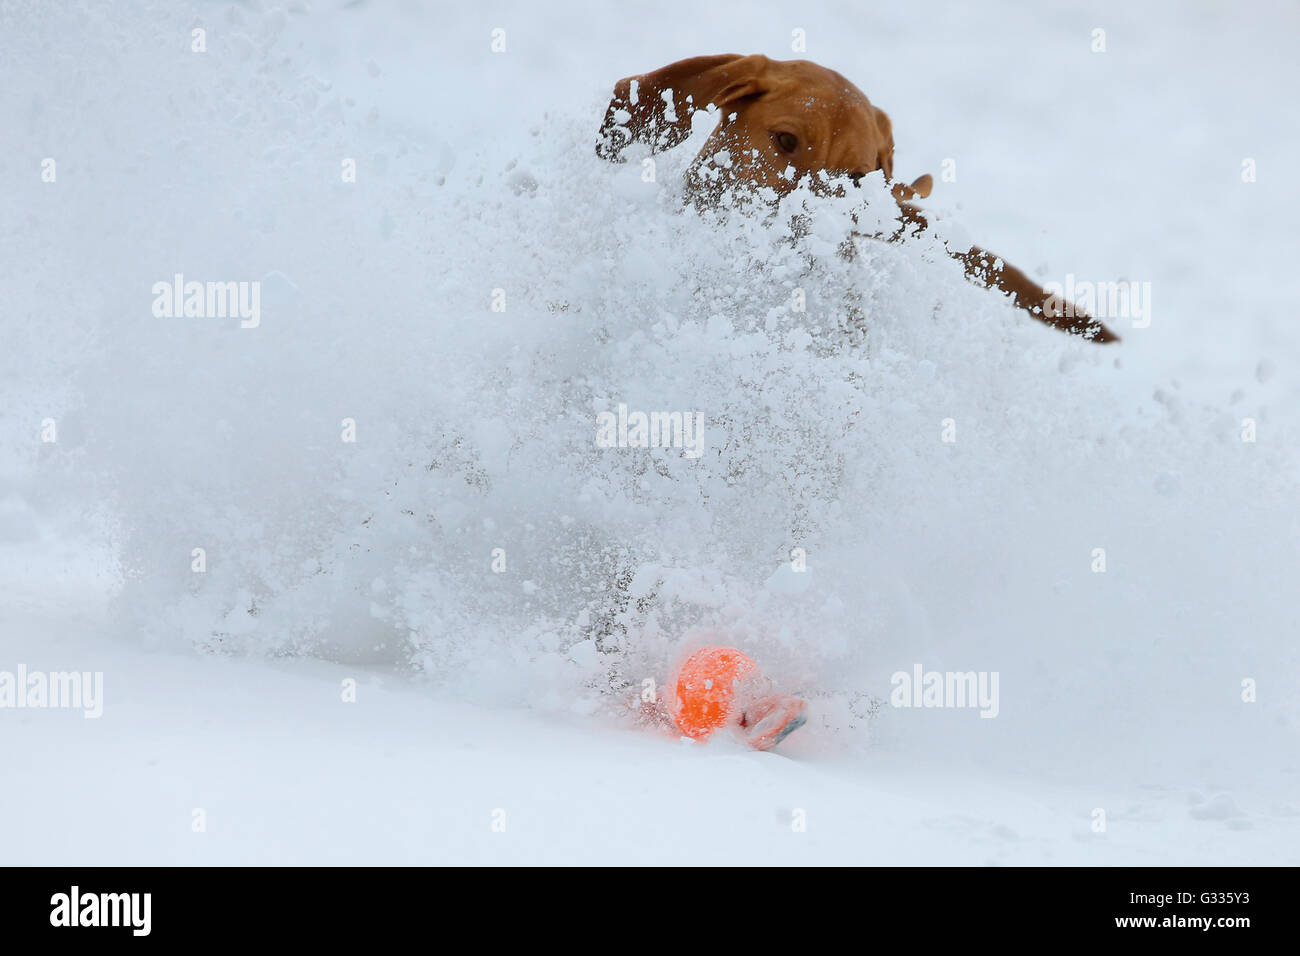 Krippenbrunn, Autriche, Magyar Vizsla devint jouent dans la neige Banque D'Images